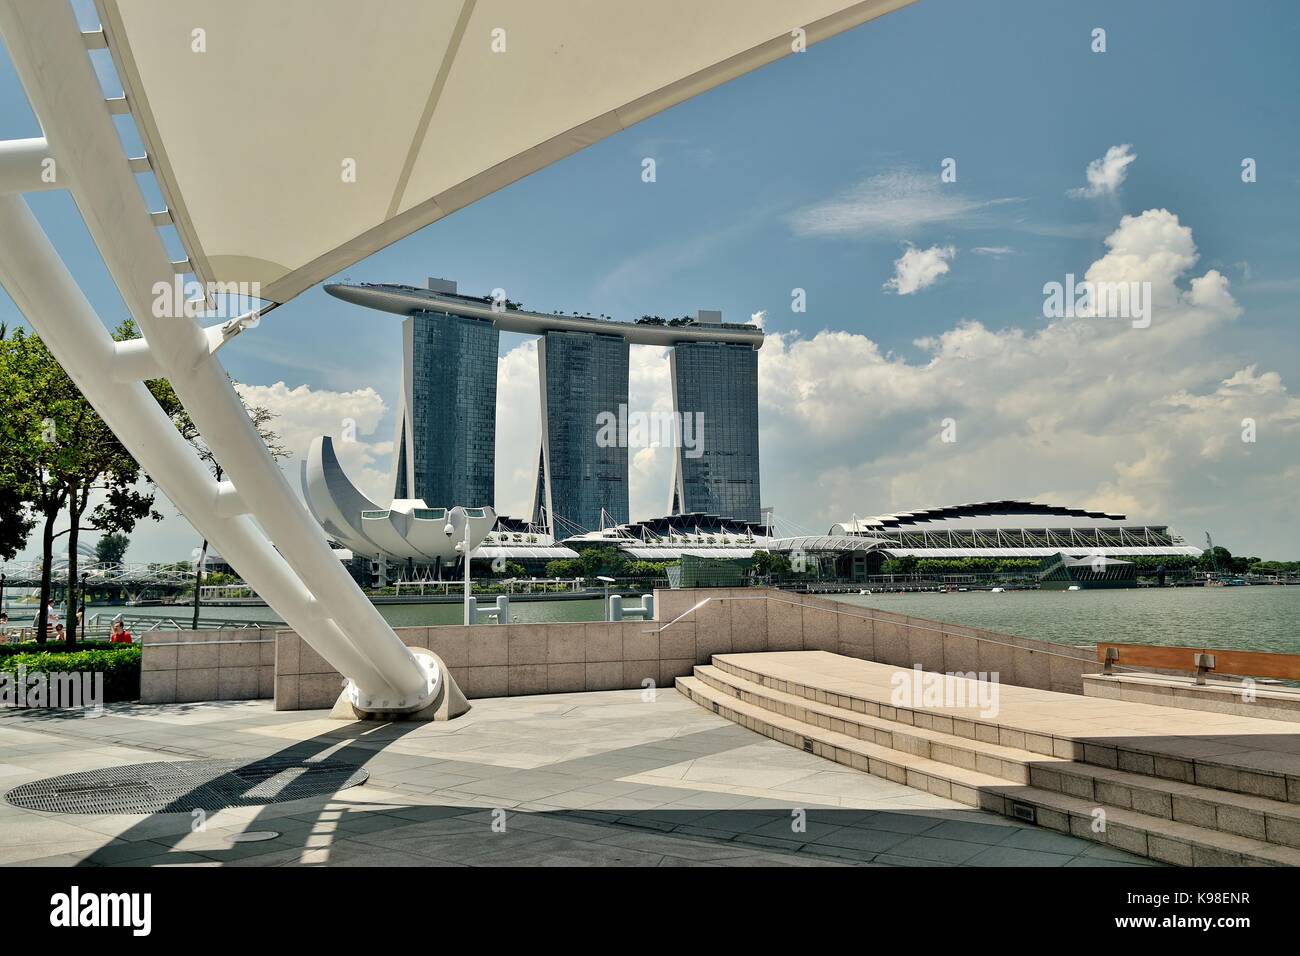 Vue de jour de Marina Bay Sands Resort de l'Esplanade Theatres on the bay, Singapour Banque D'Images